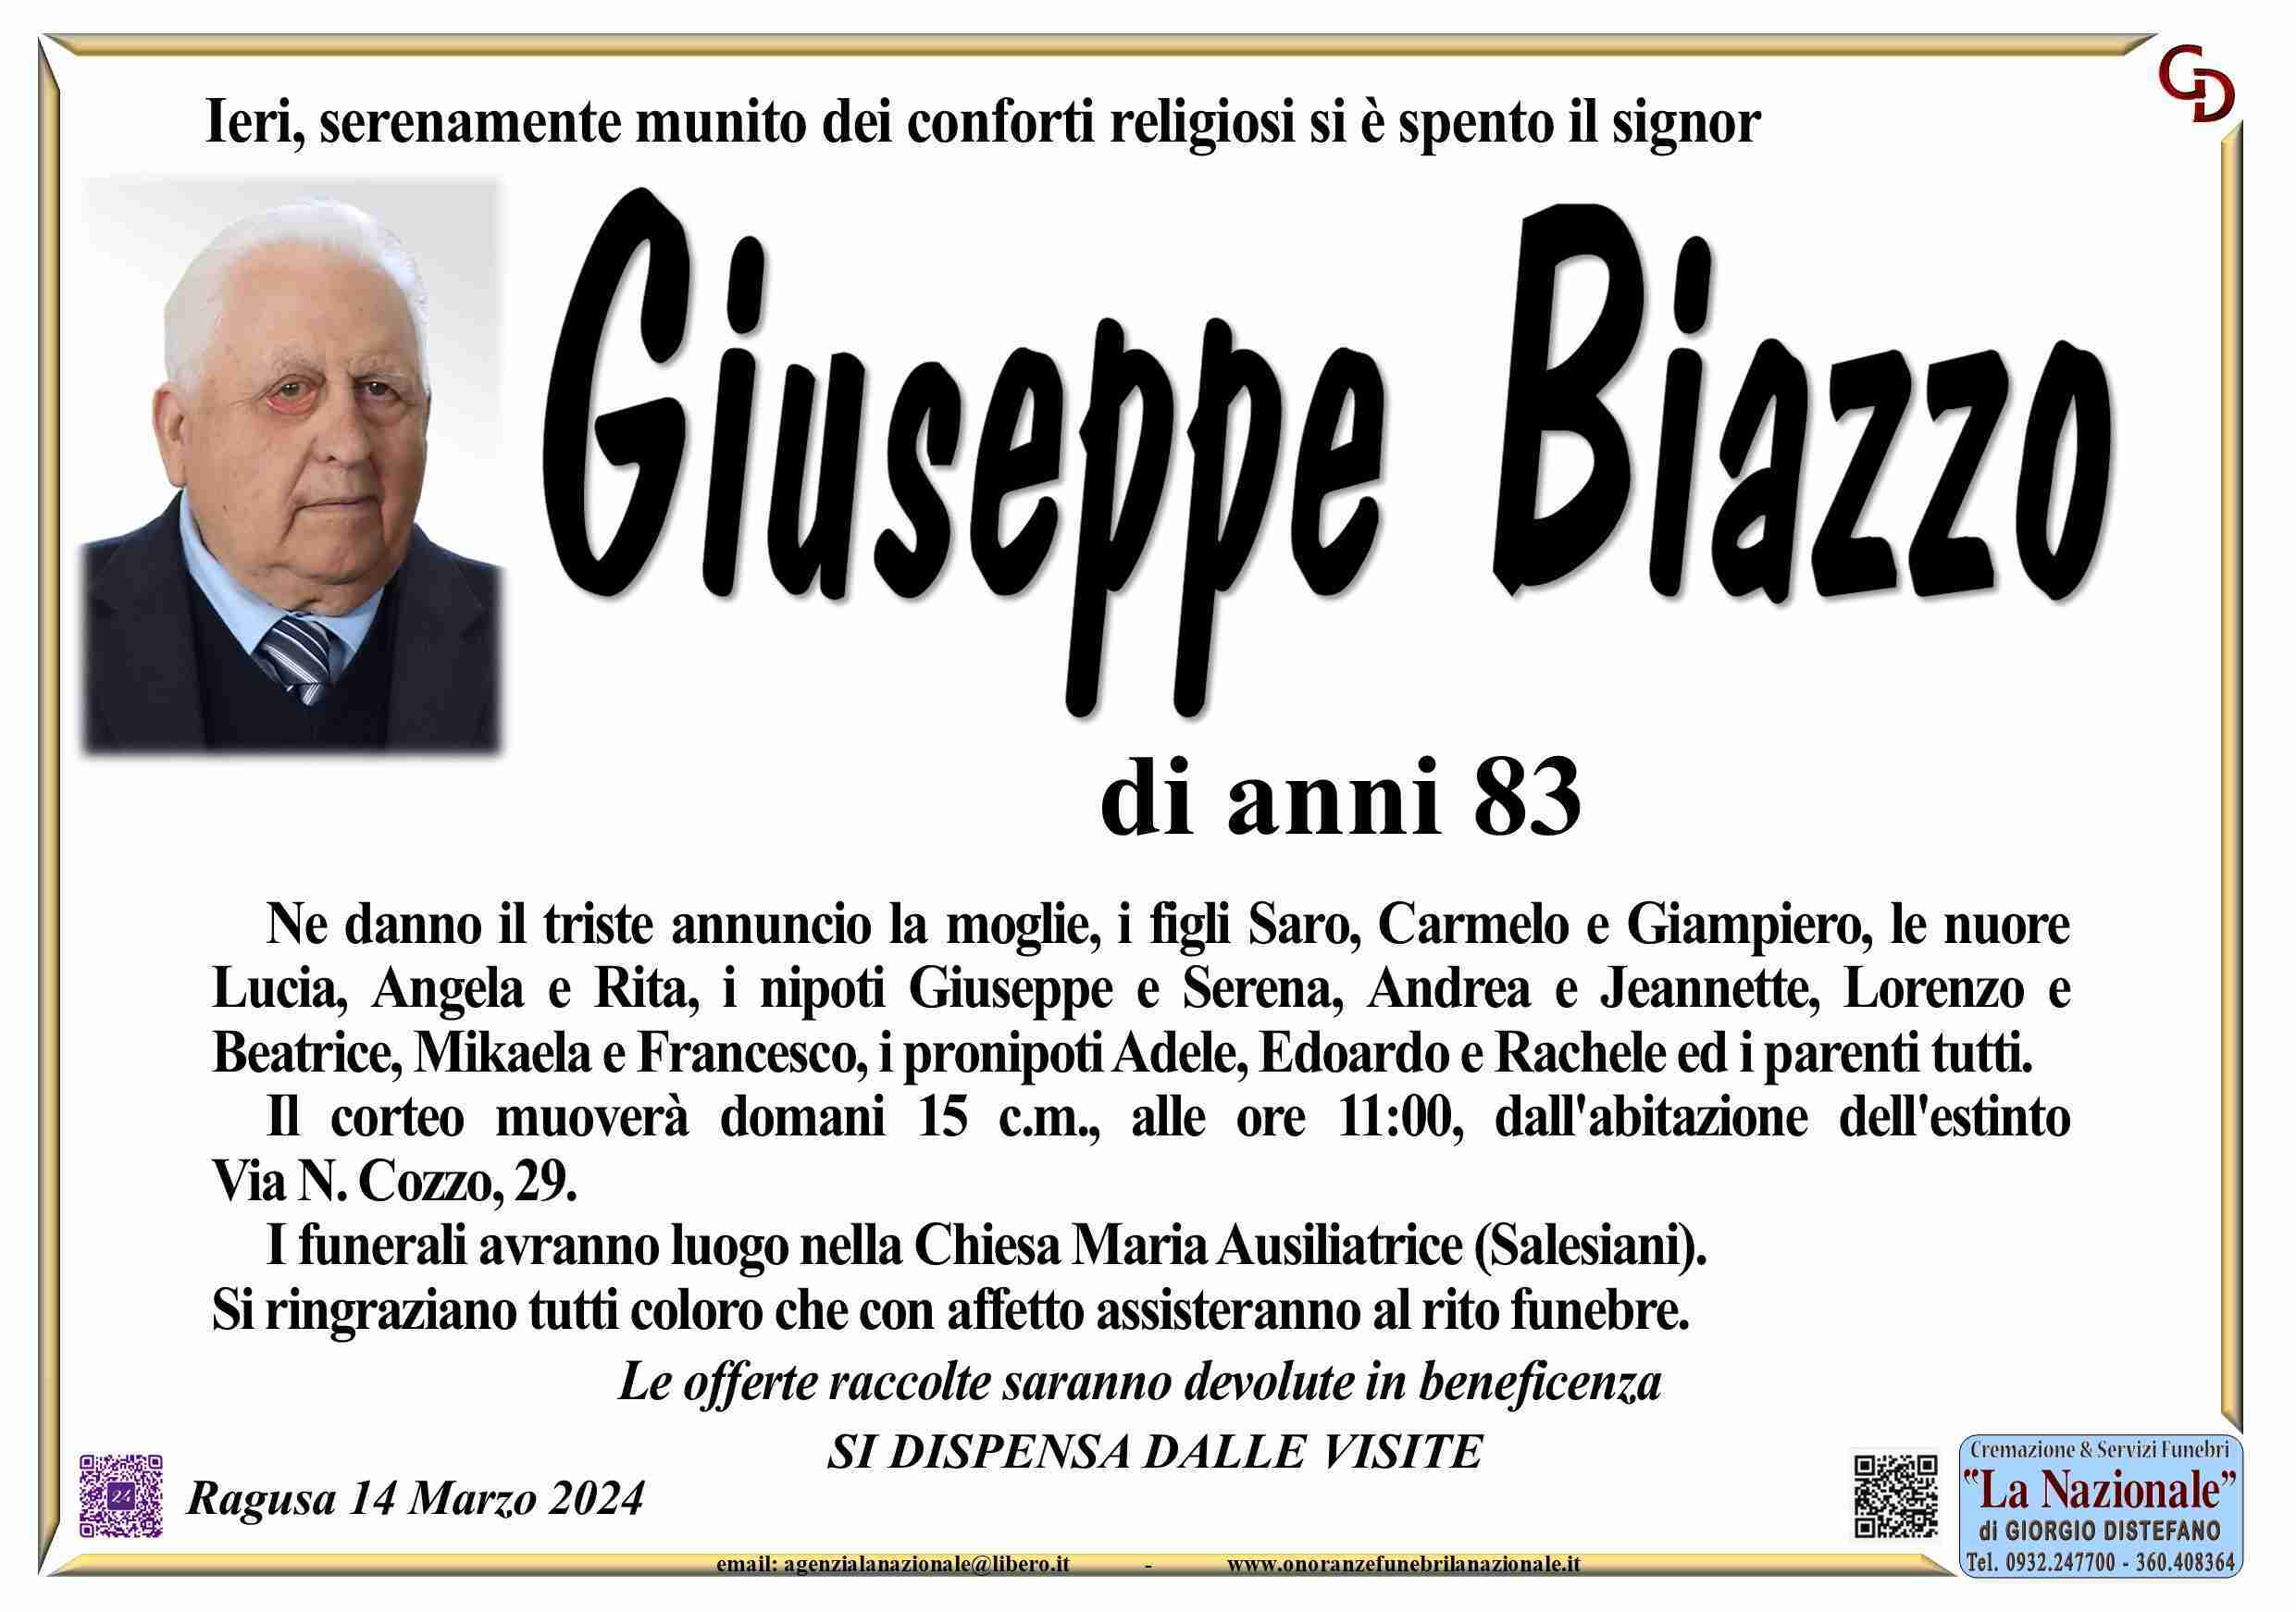 Giuseppe Biazzo